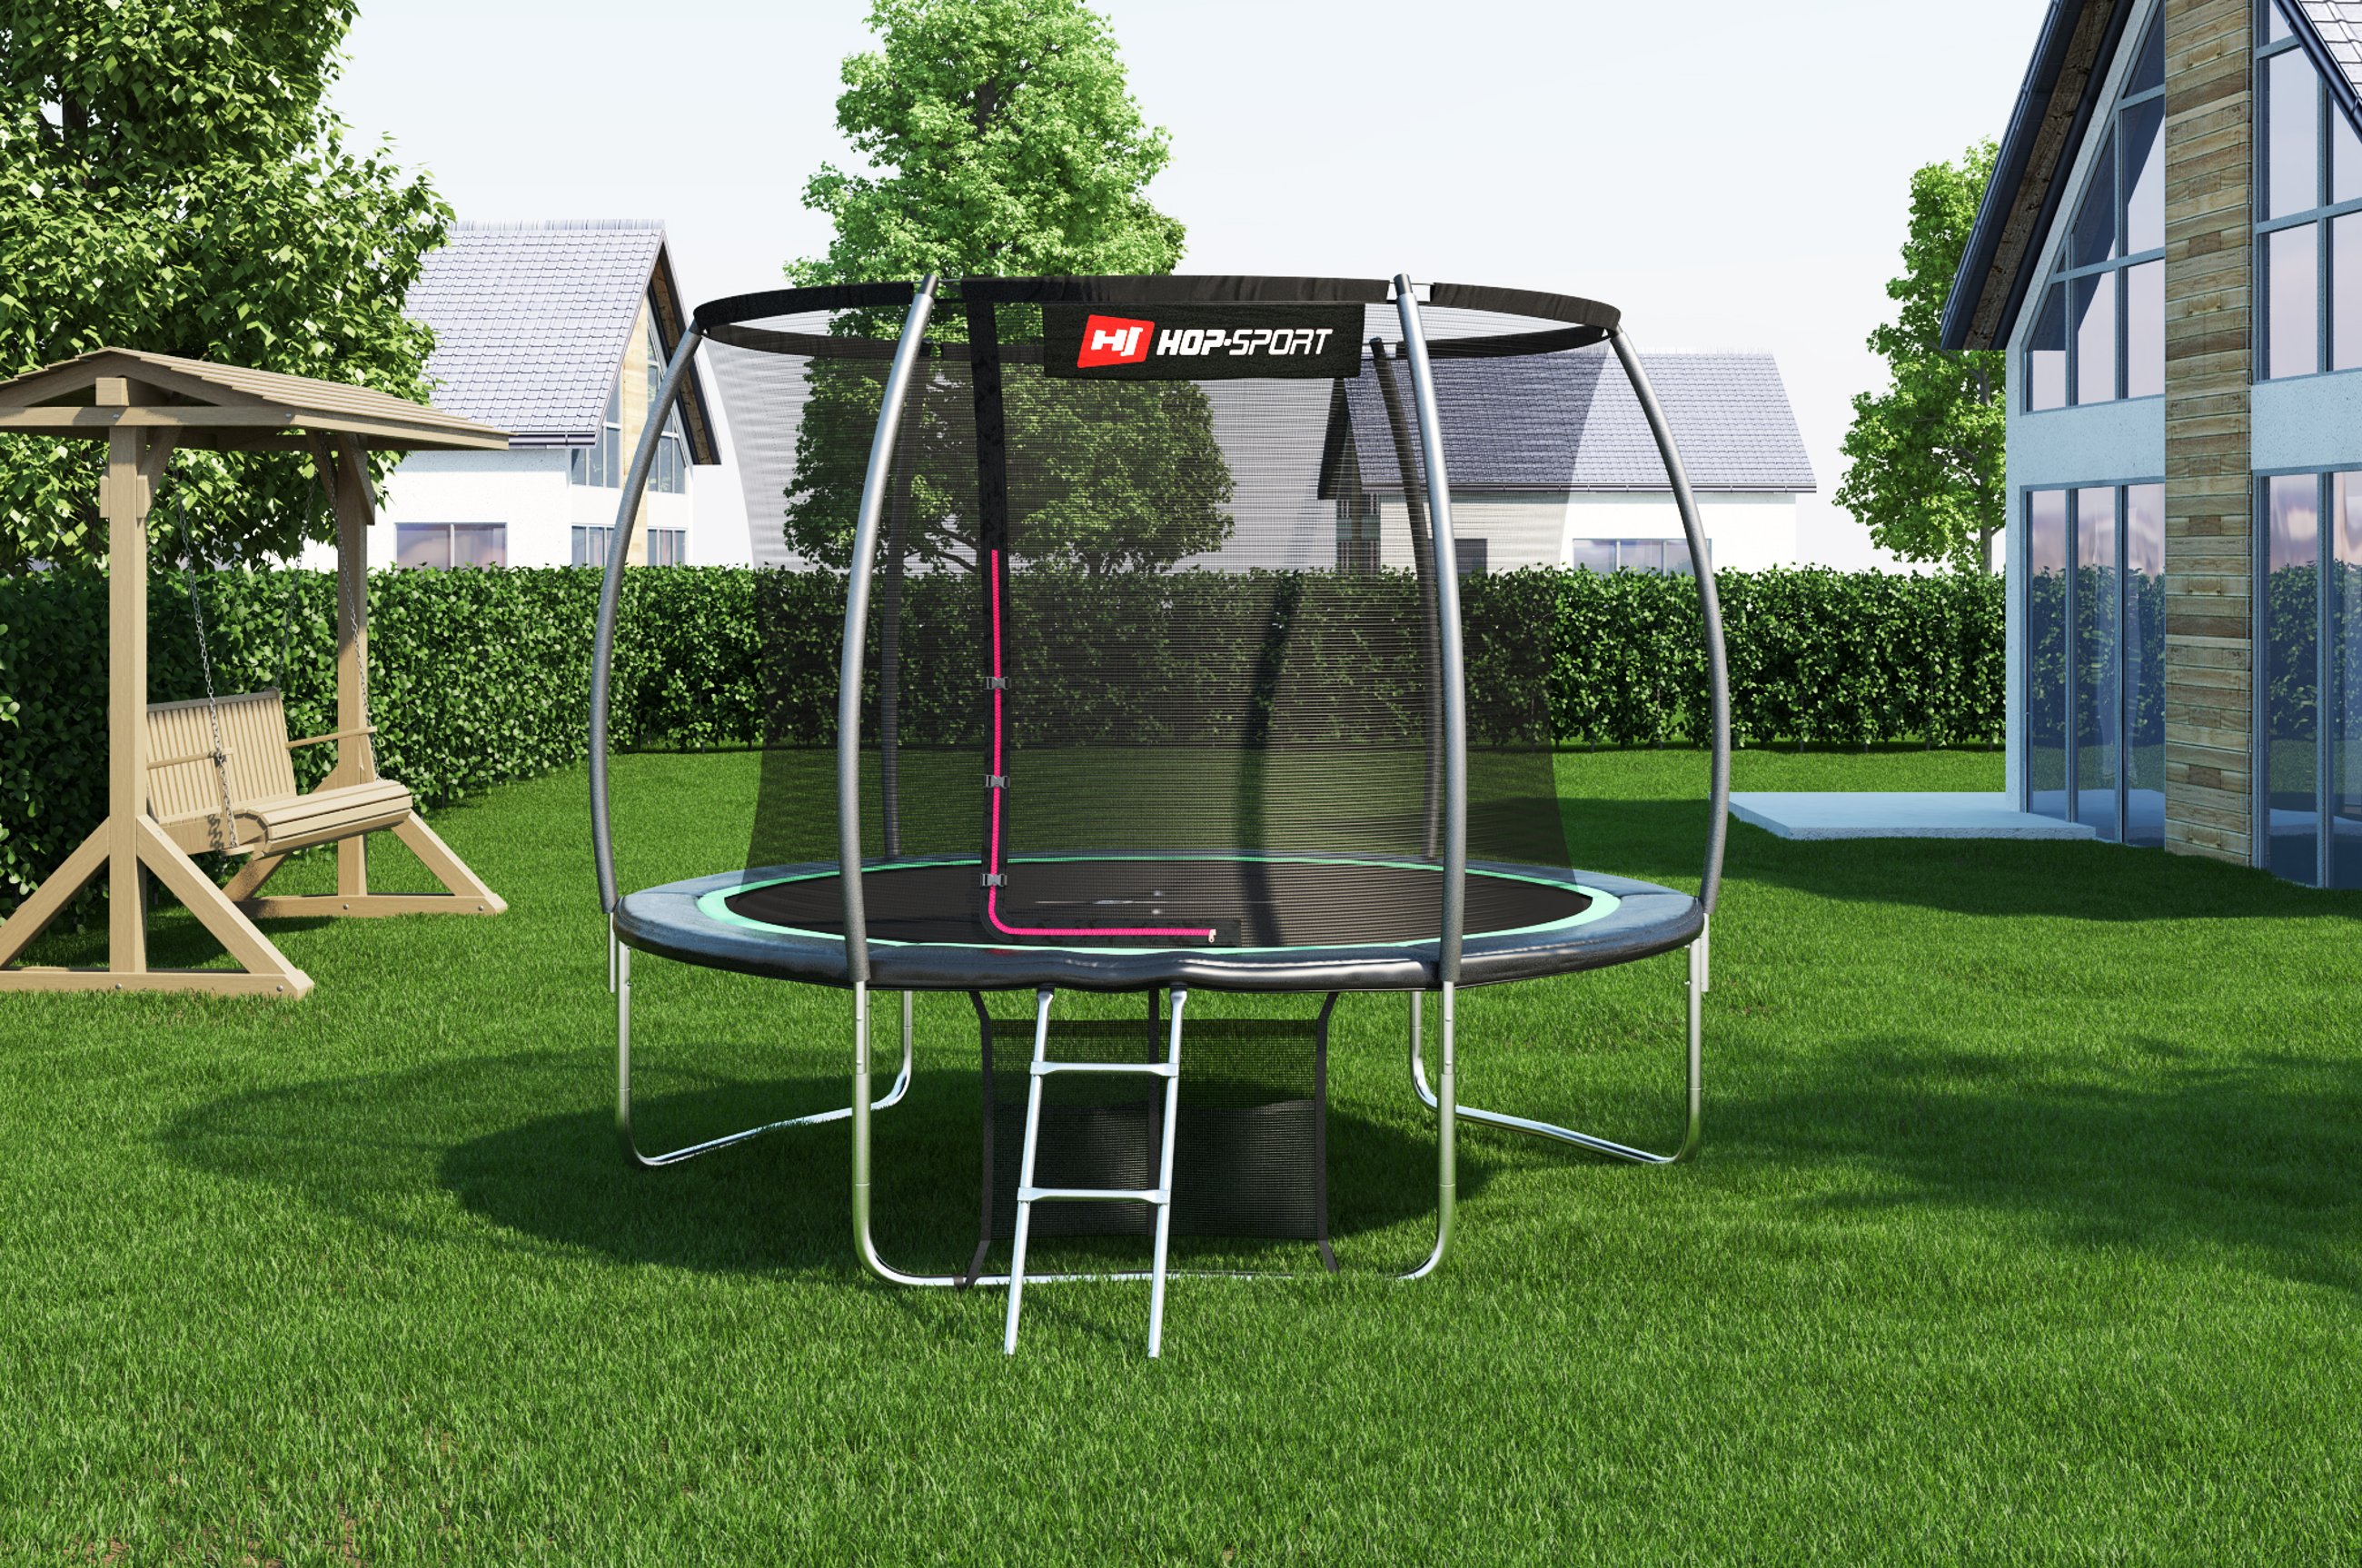 Trampolin der Marke Hop-Sport, aufgebaut im Garten für Fitness und Spaß